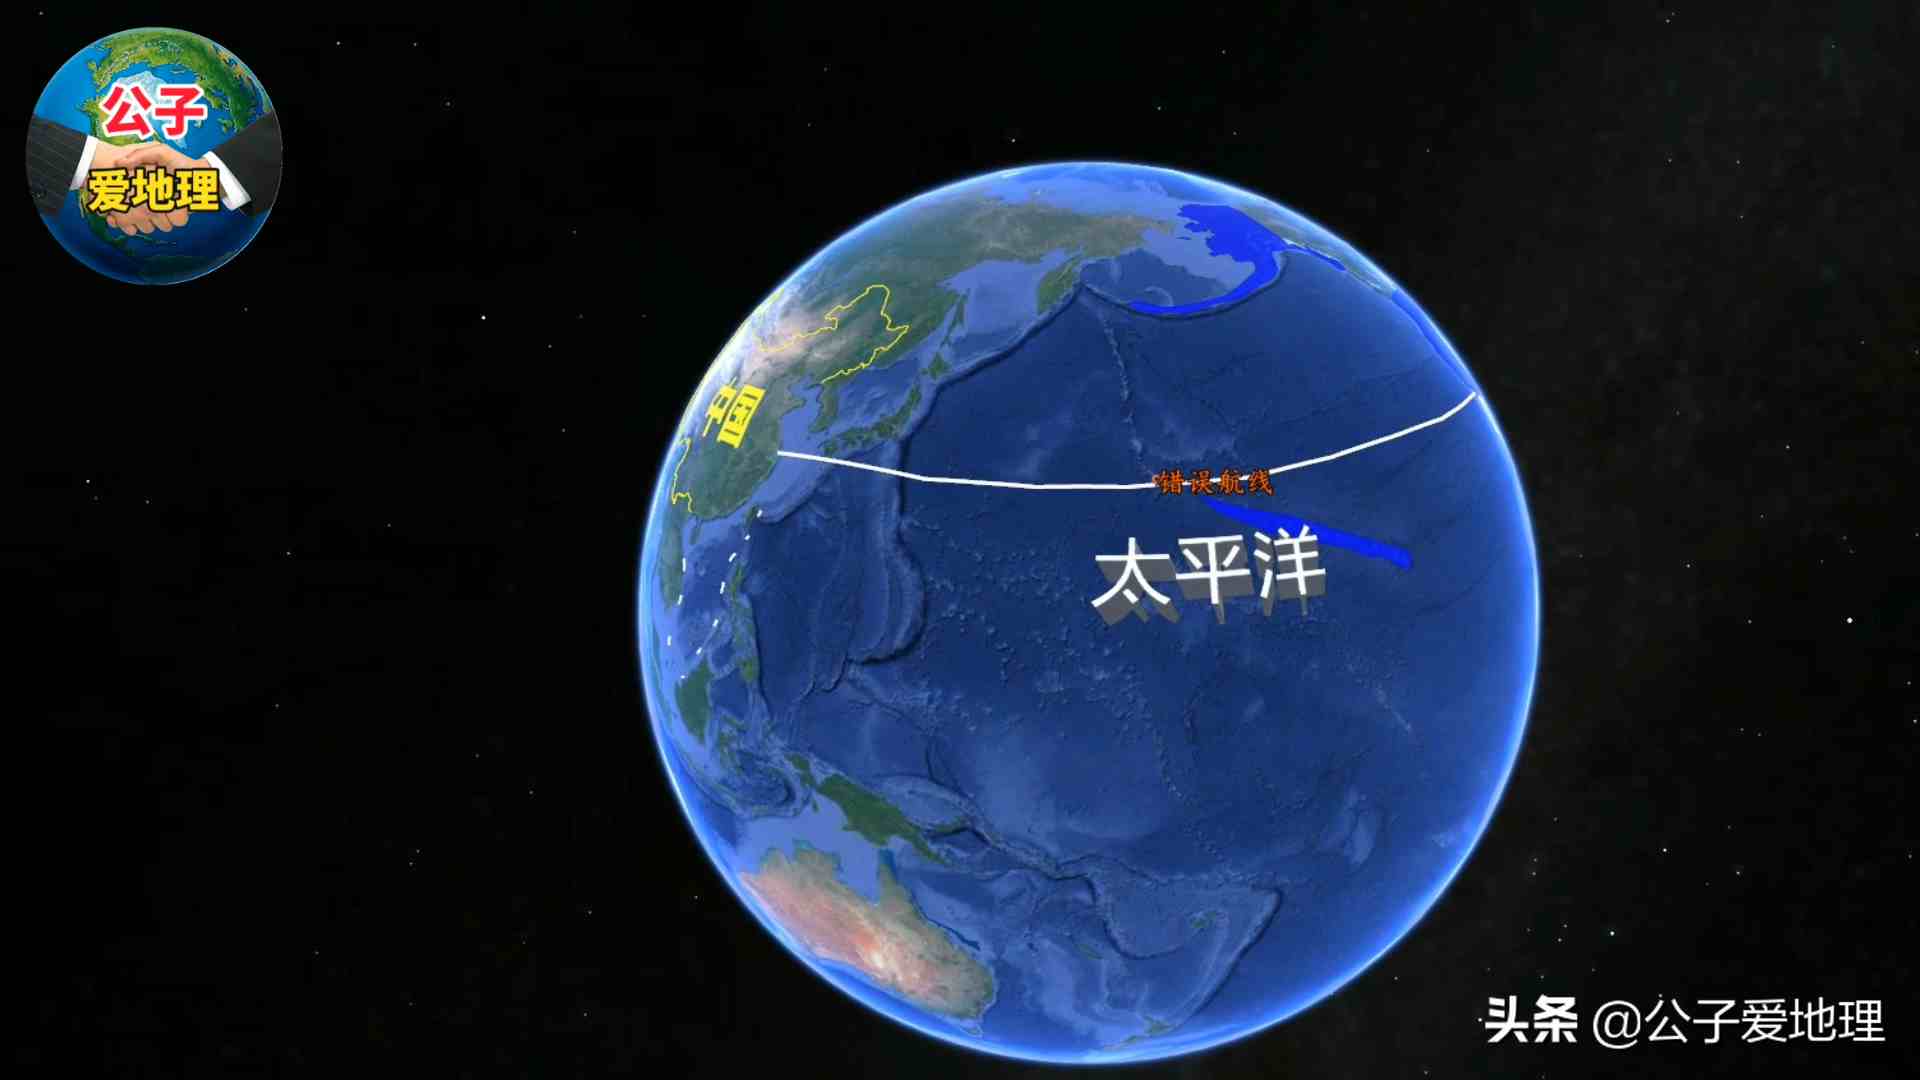 中国飞往美国的飞机，为何从不横越太平洋？返程多耗时1.5小时